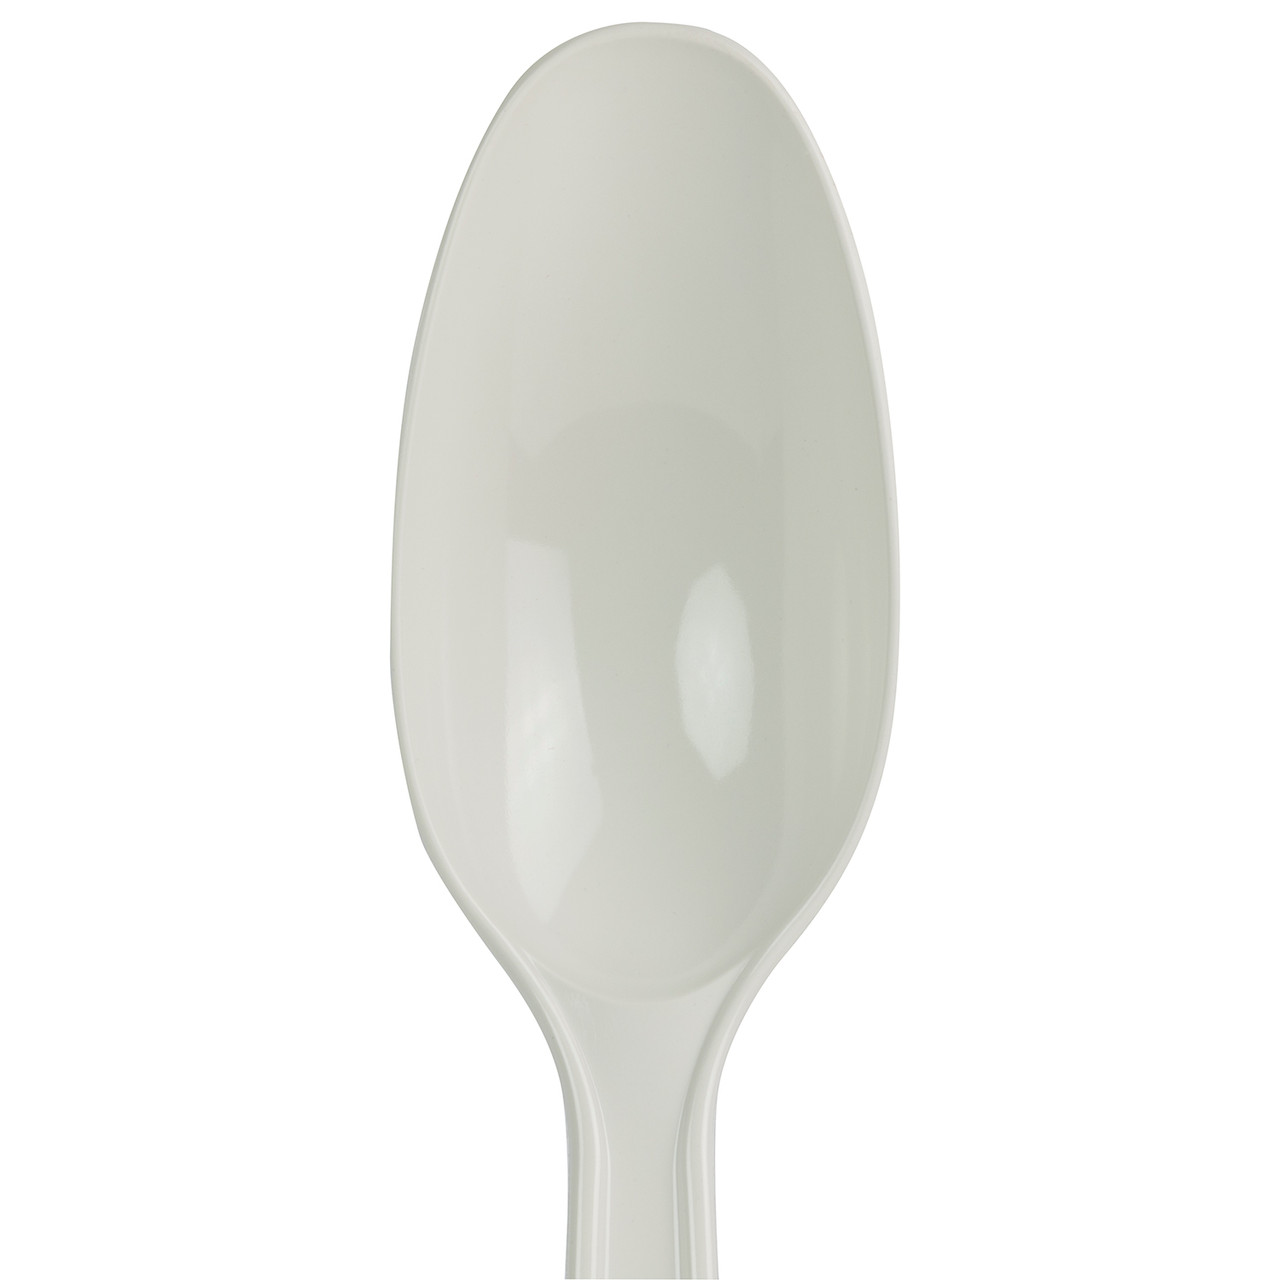 High Heat Nylon Spoon - White